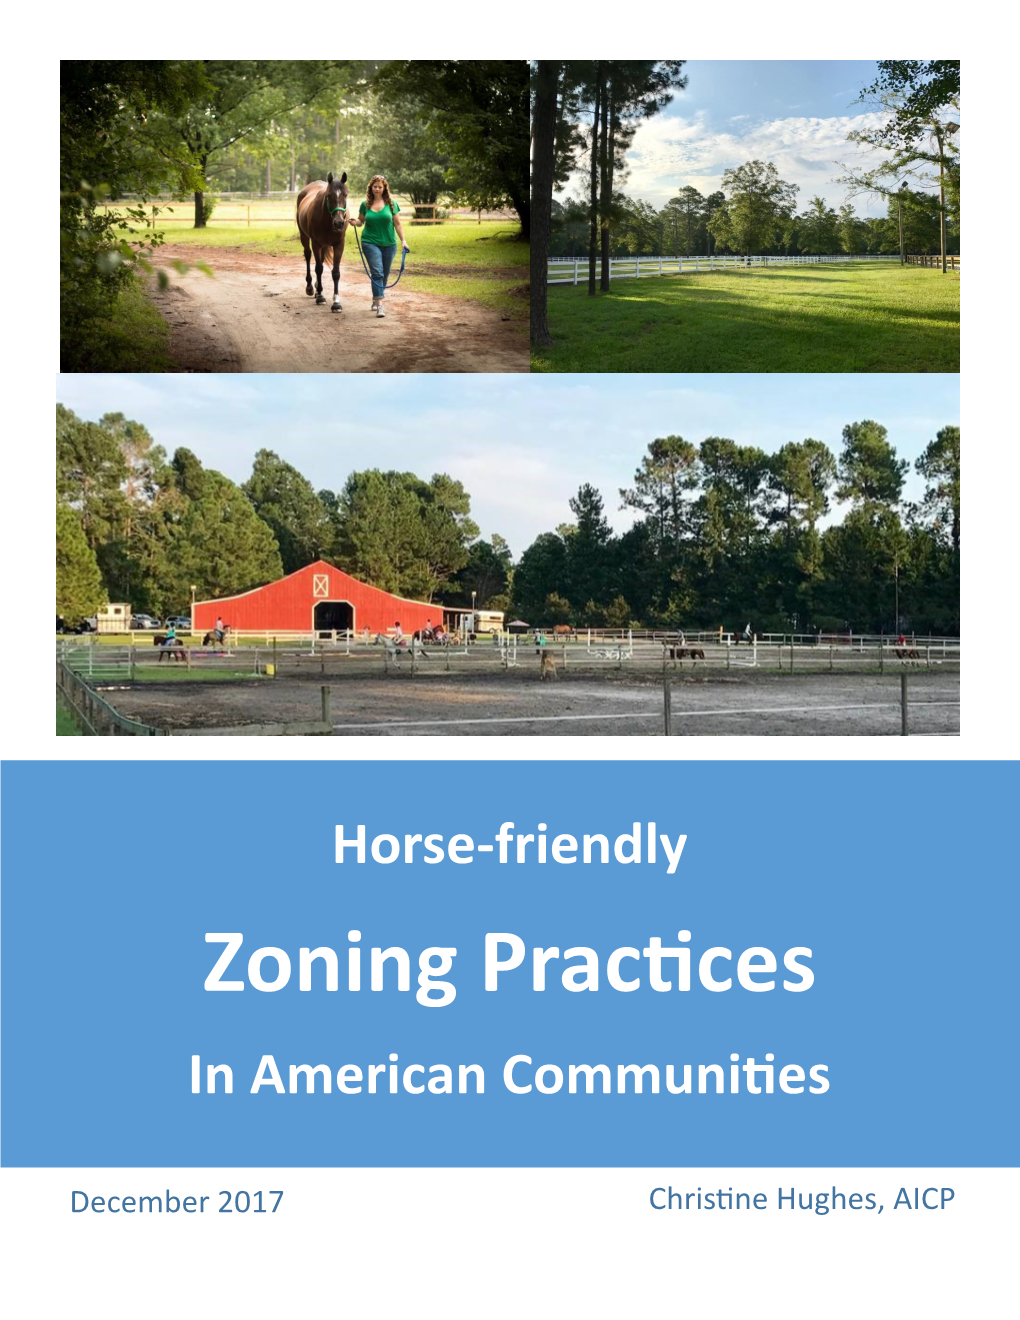 Zoning Practices in American Communities